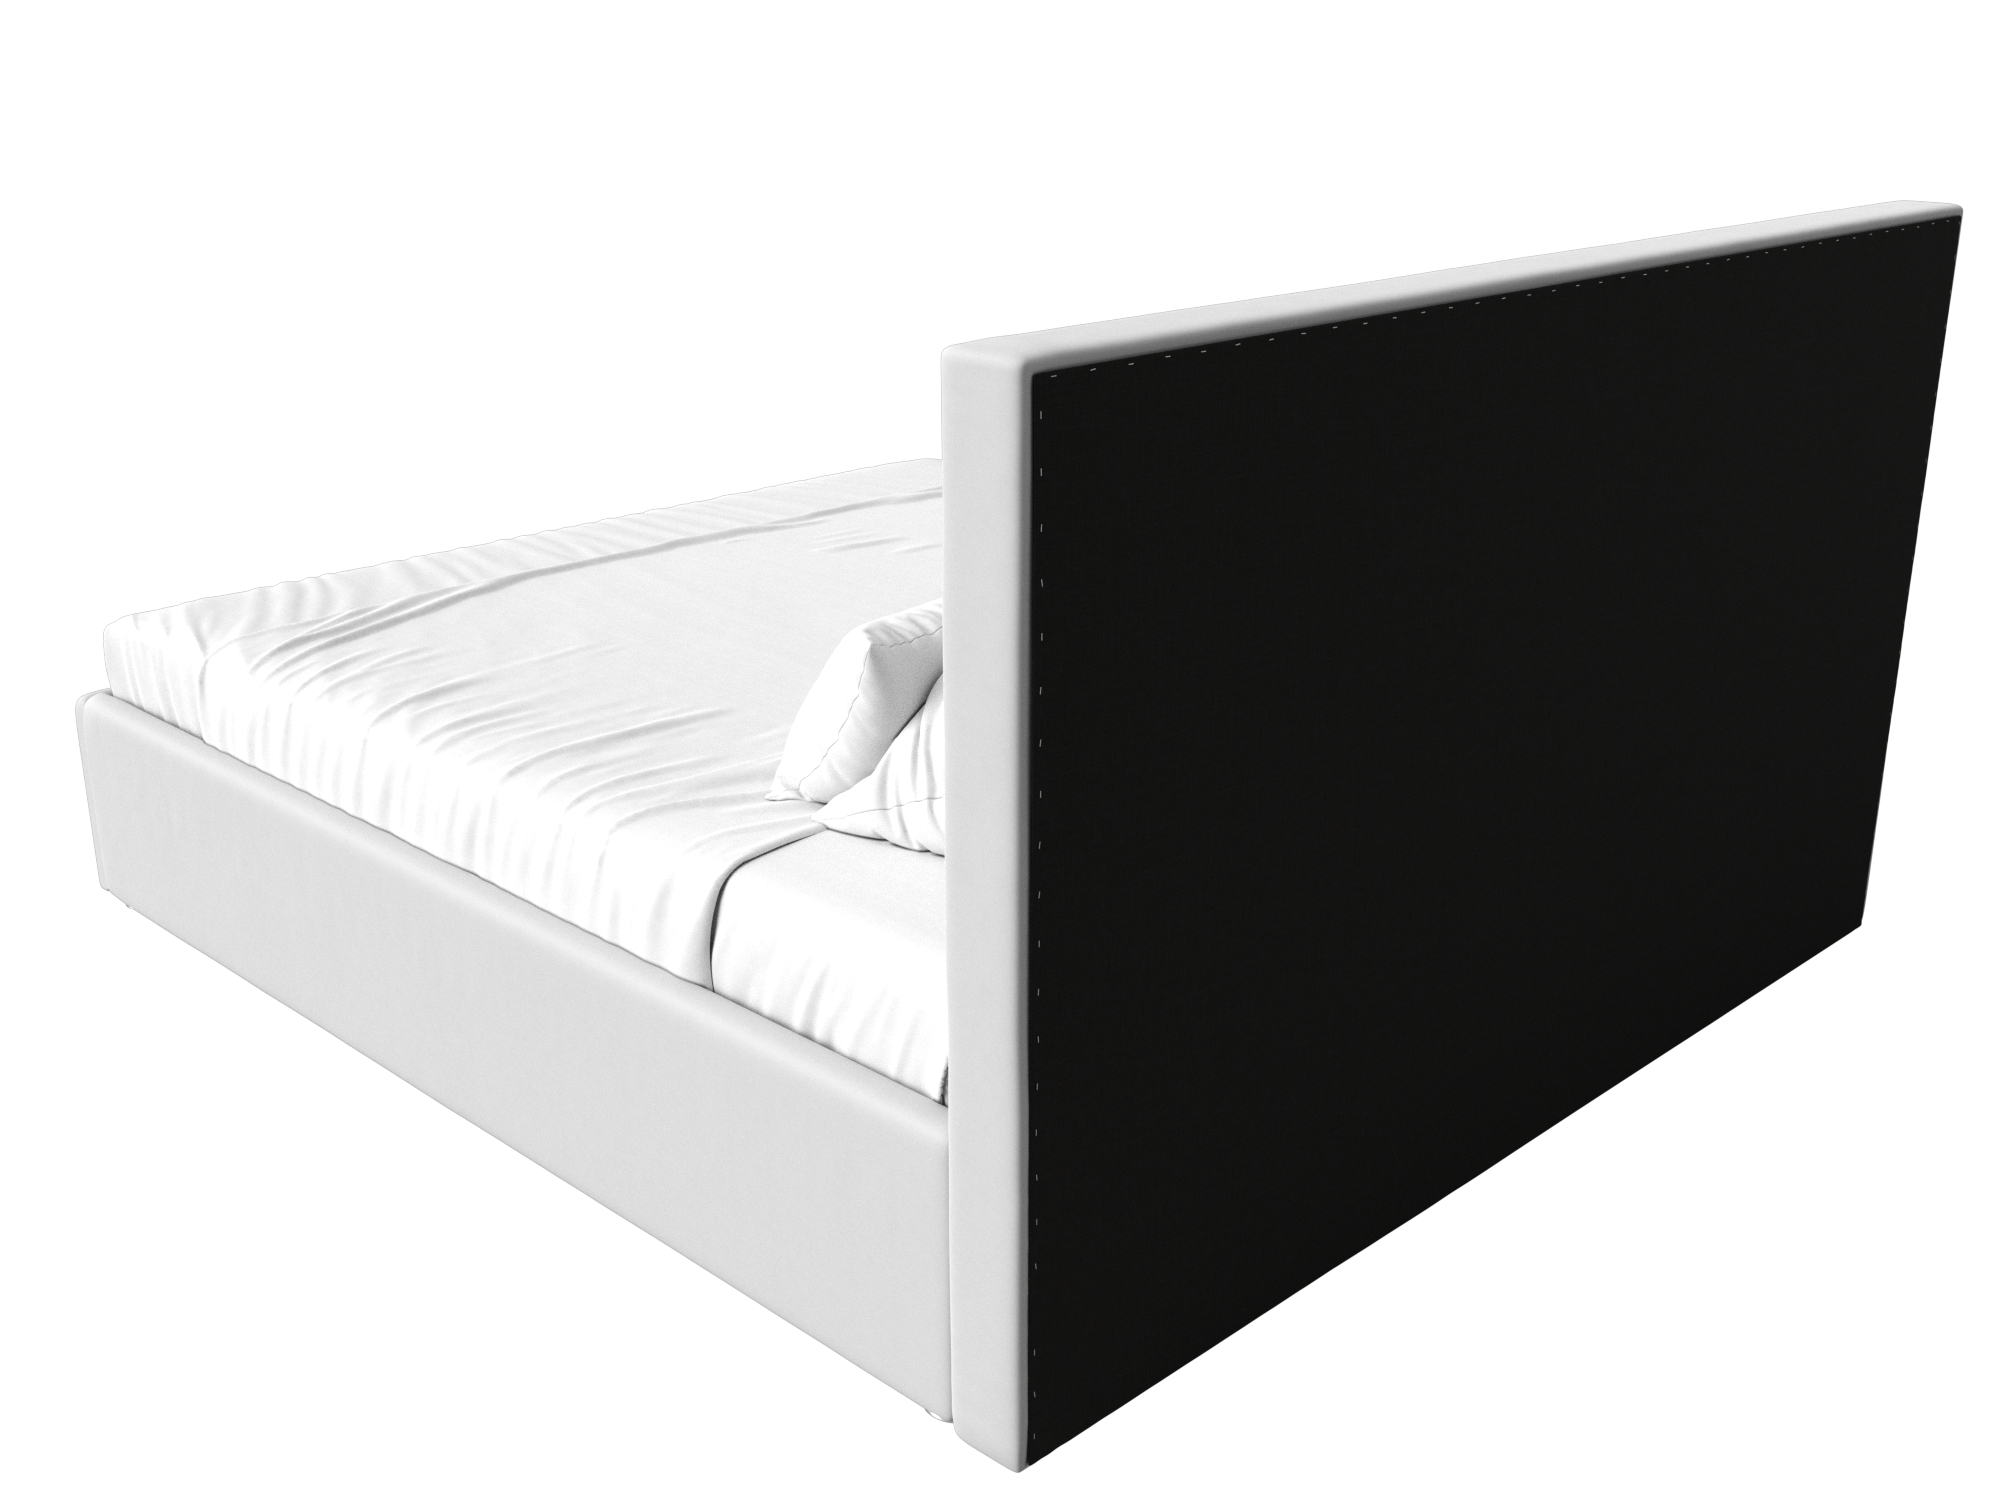 Интерьерная кровать Кариба 180 (Белый)